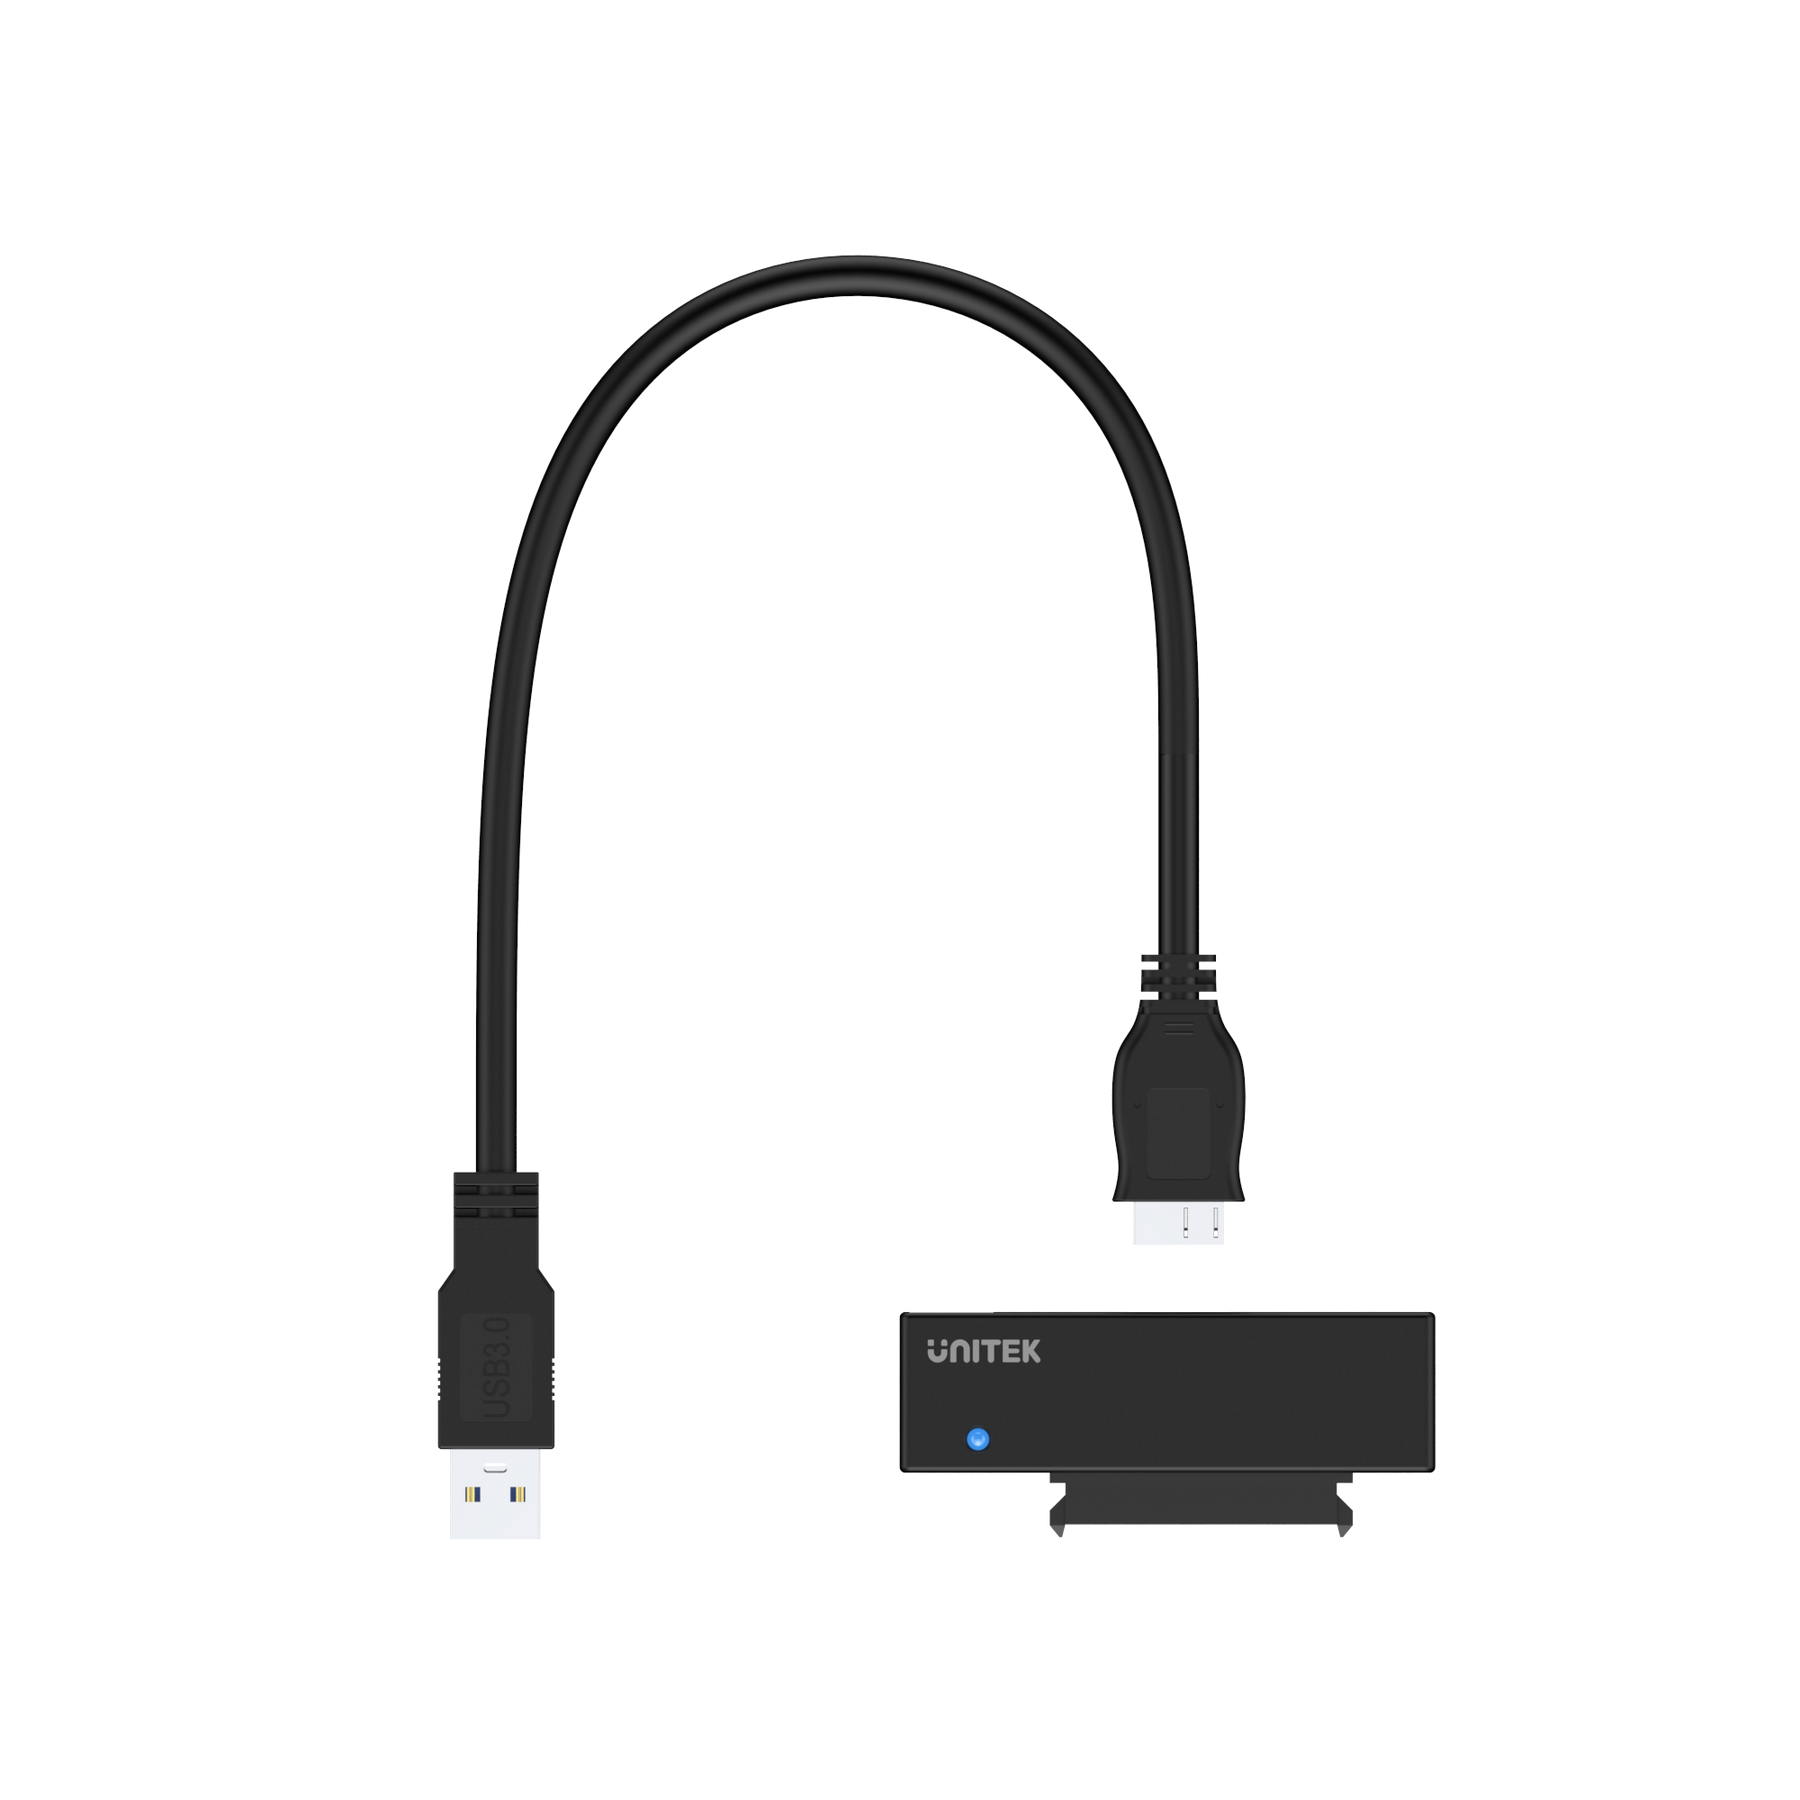 USB 3.0 轉 SATA III 轉接器 (附12V2A電源轉換器)